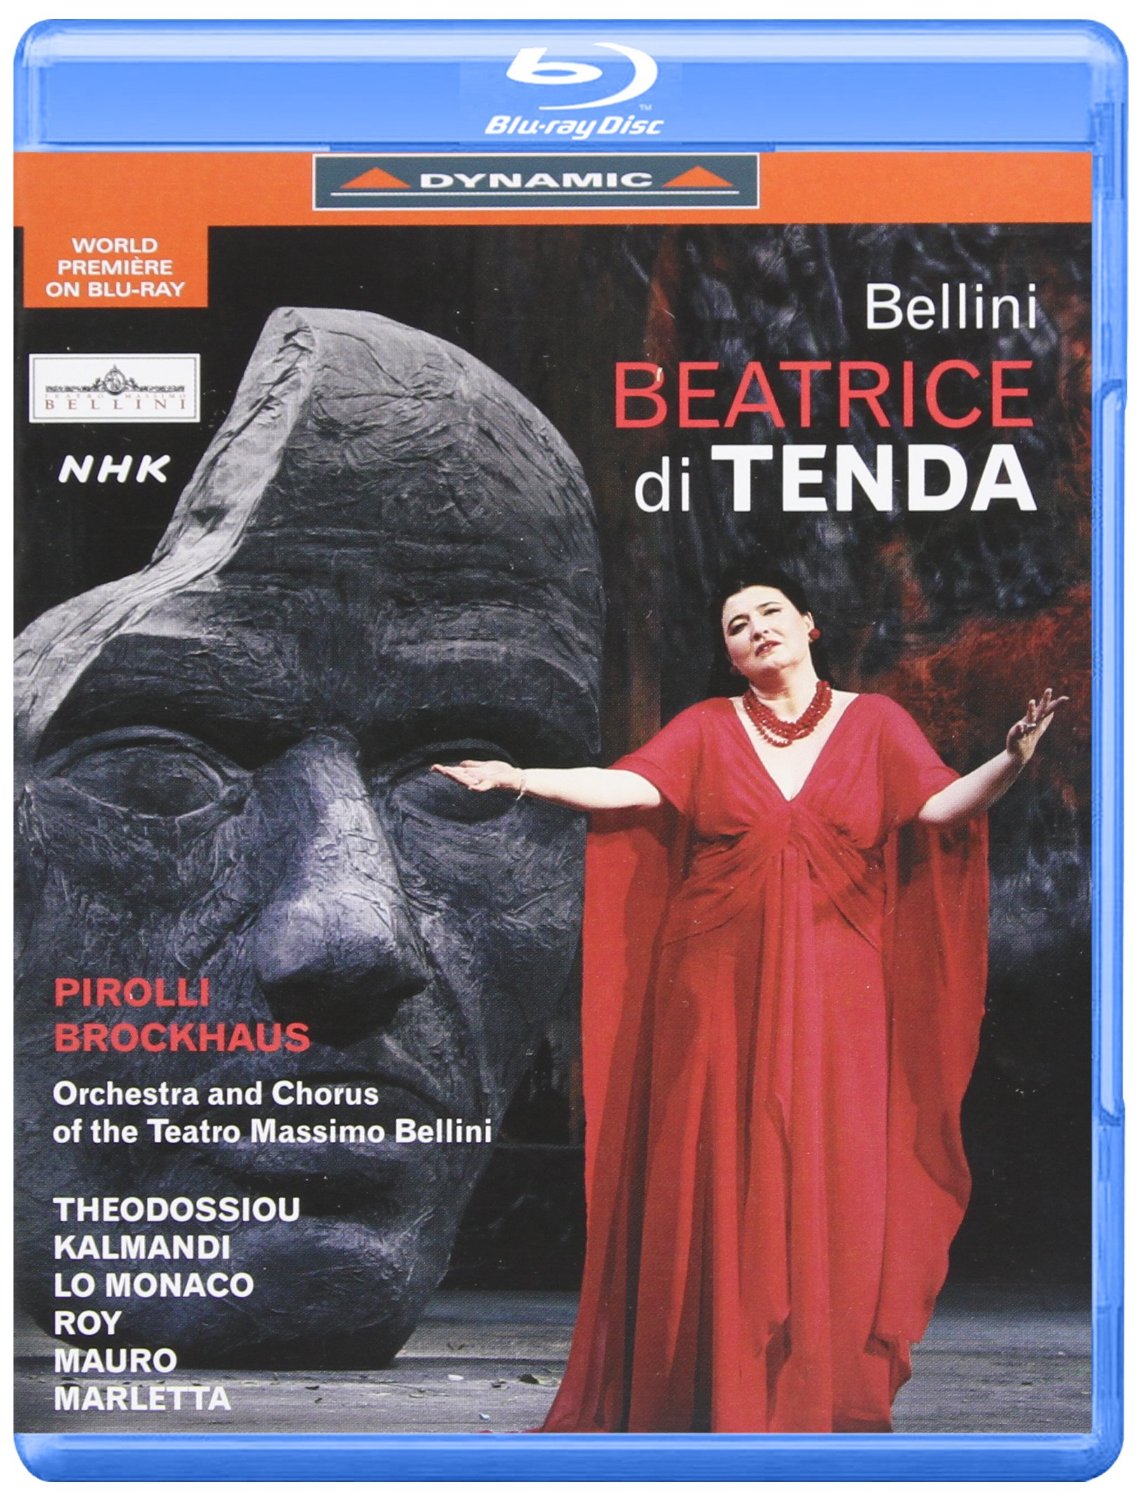 Music Blu-Ray Vincenzo Bellini - Beatrice Di Tenda NUOVO SIGILLATO, EDIZIONE DEL 11/11/2006 SUBITO DISPONIBILE